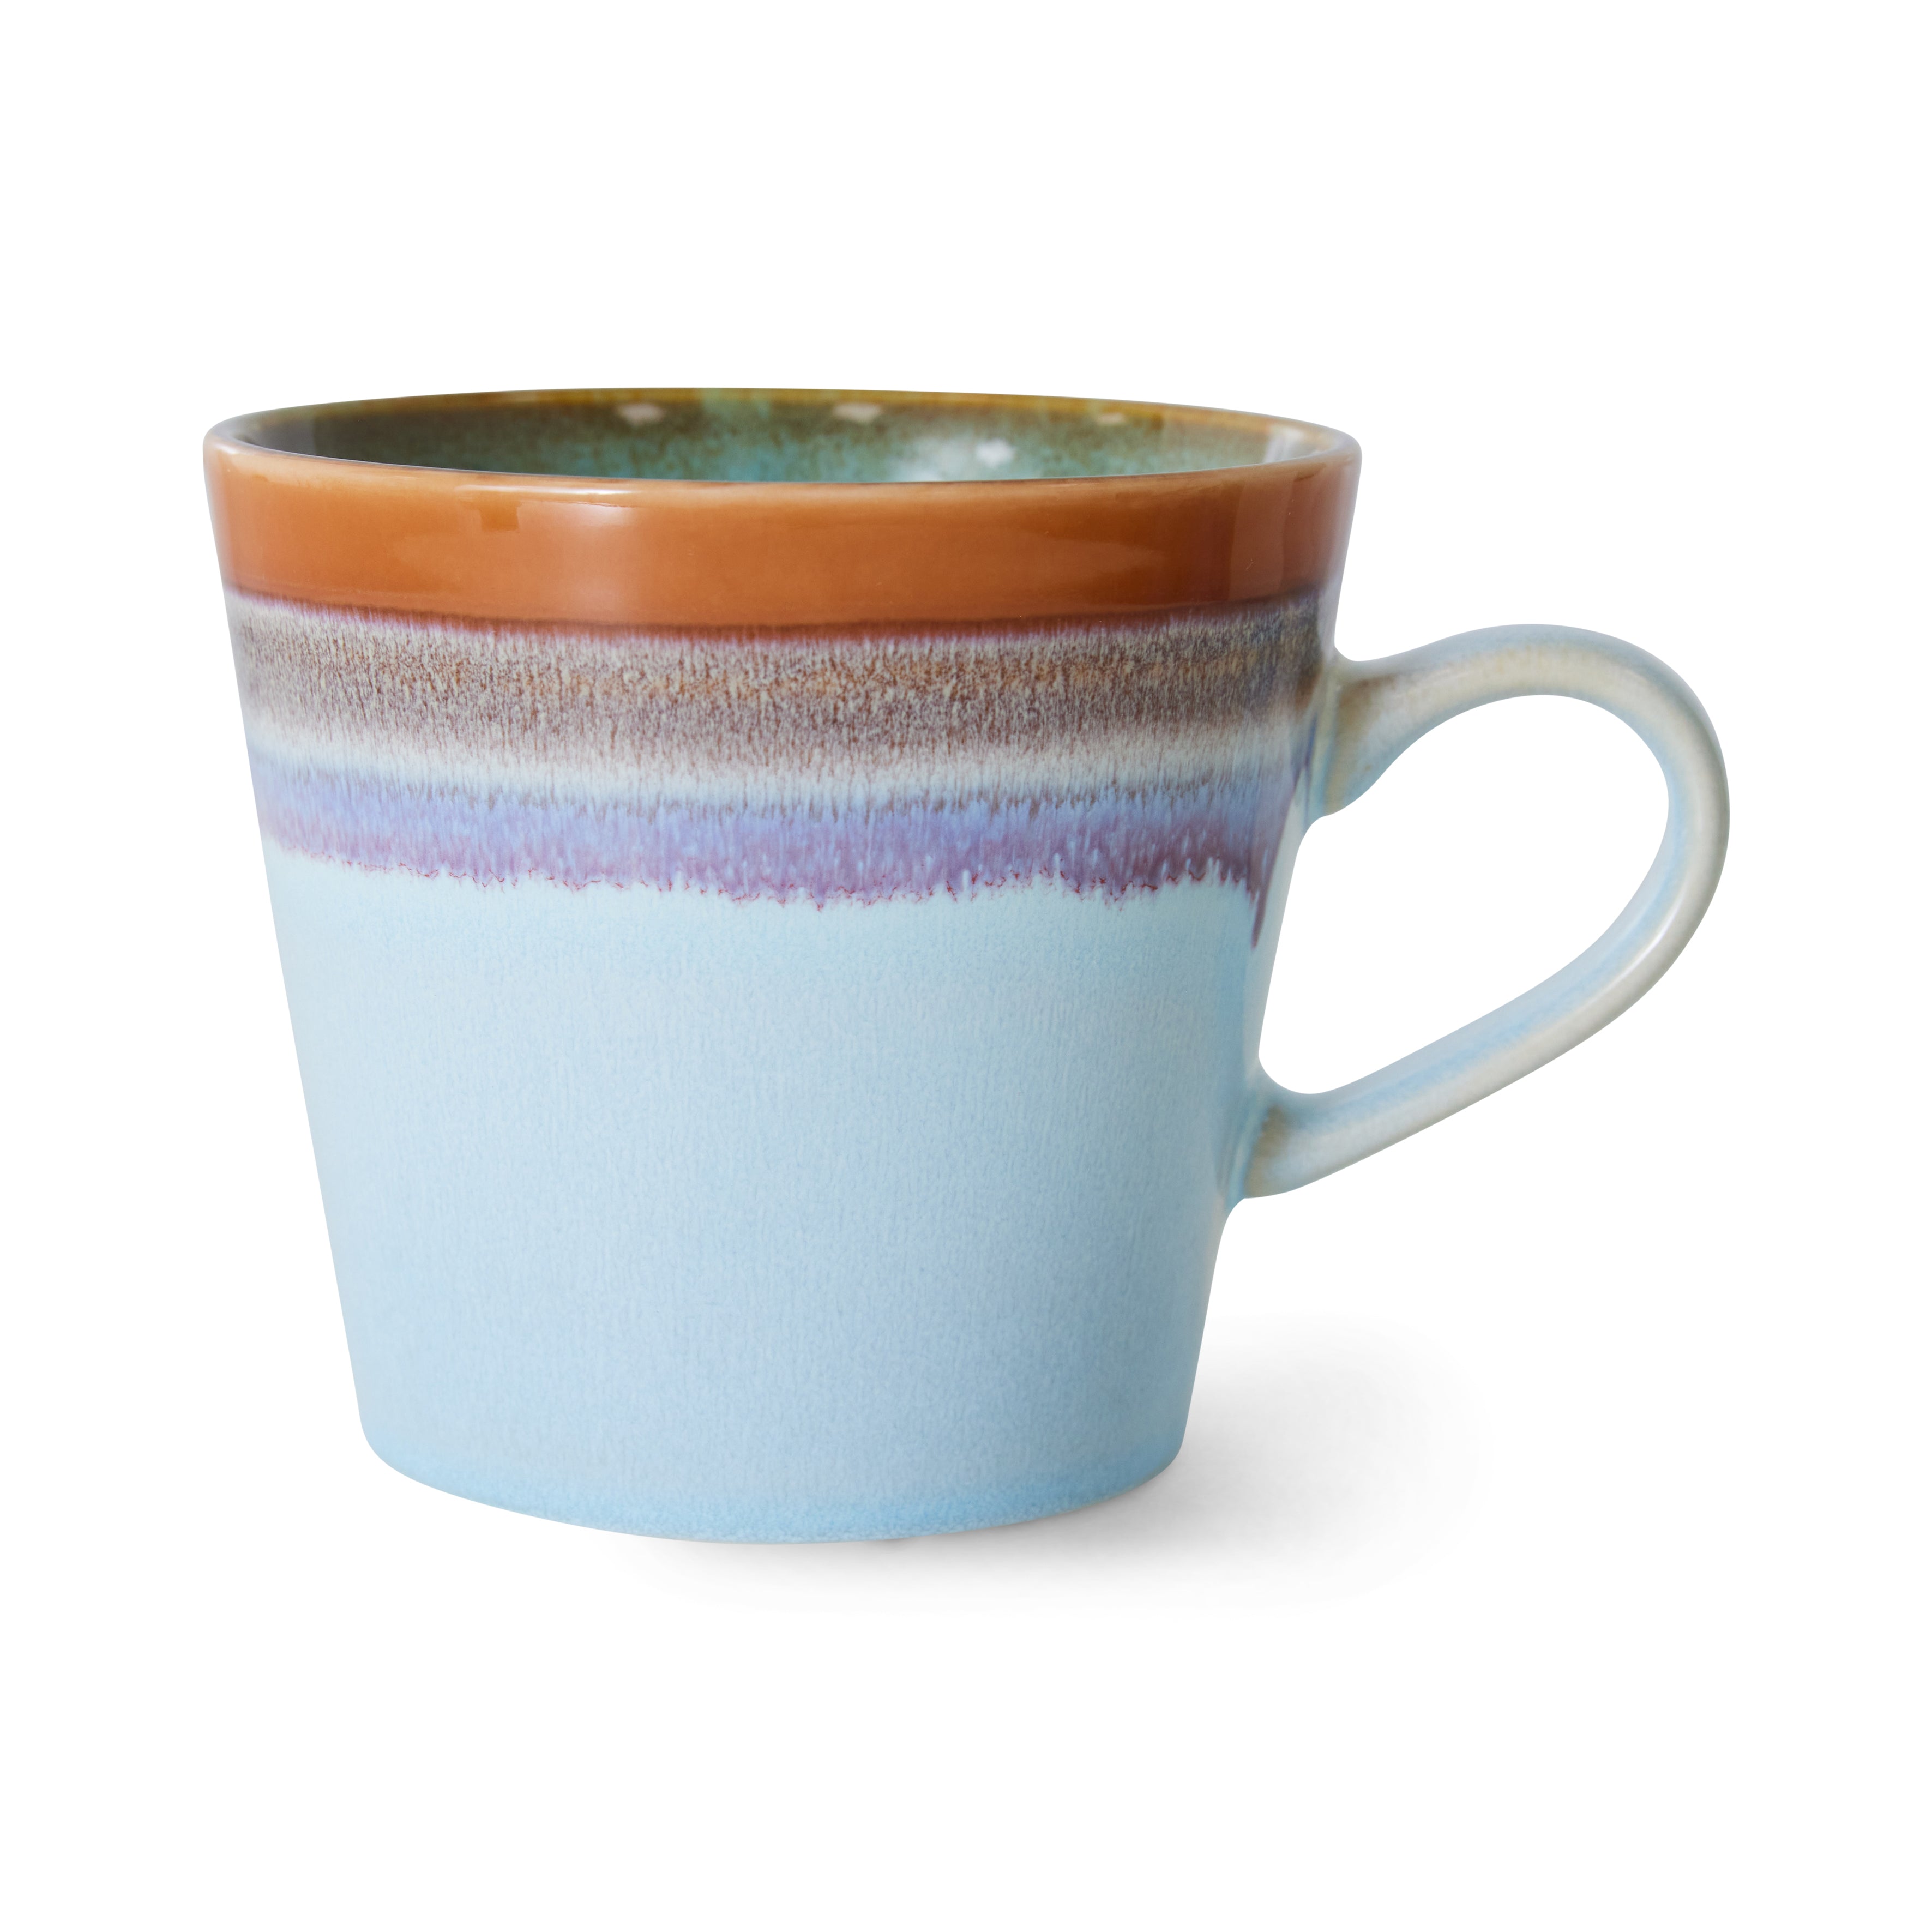 70s ceramics: cappuccino mug, ash